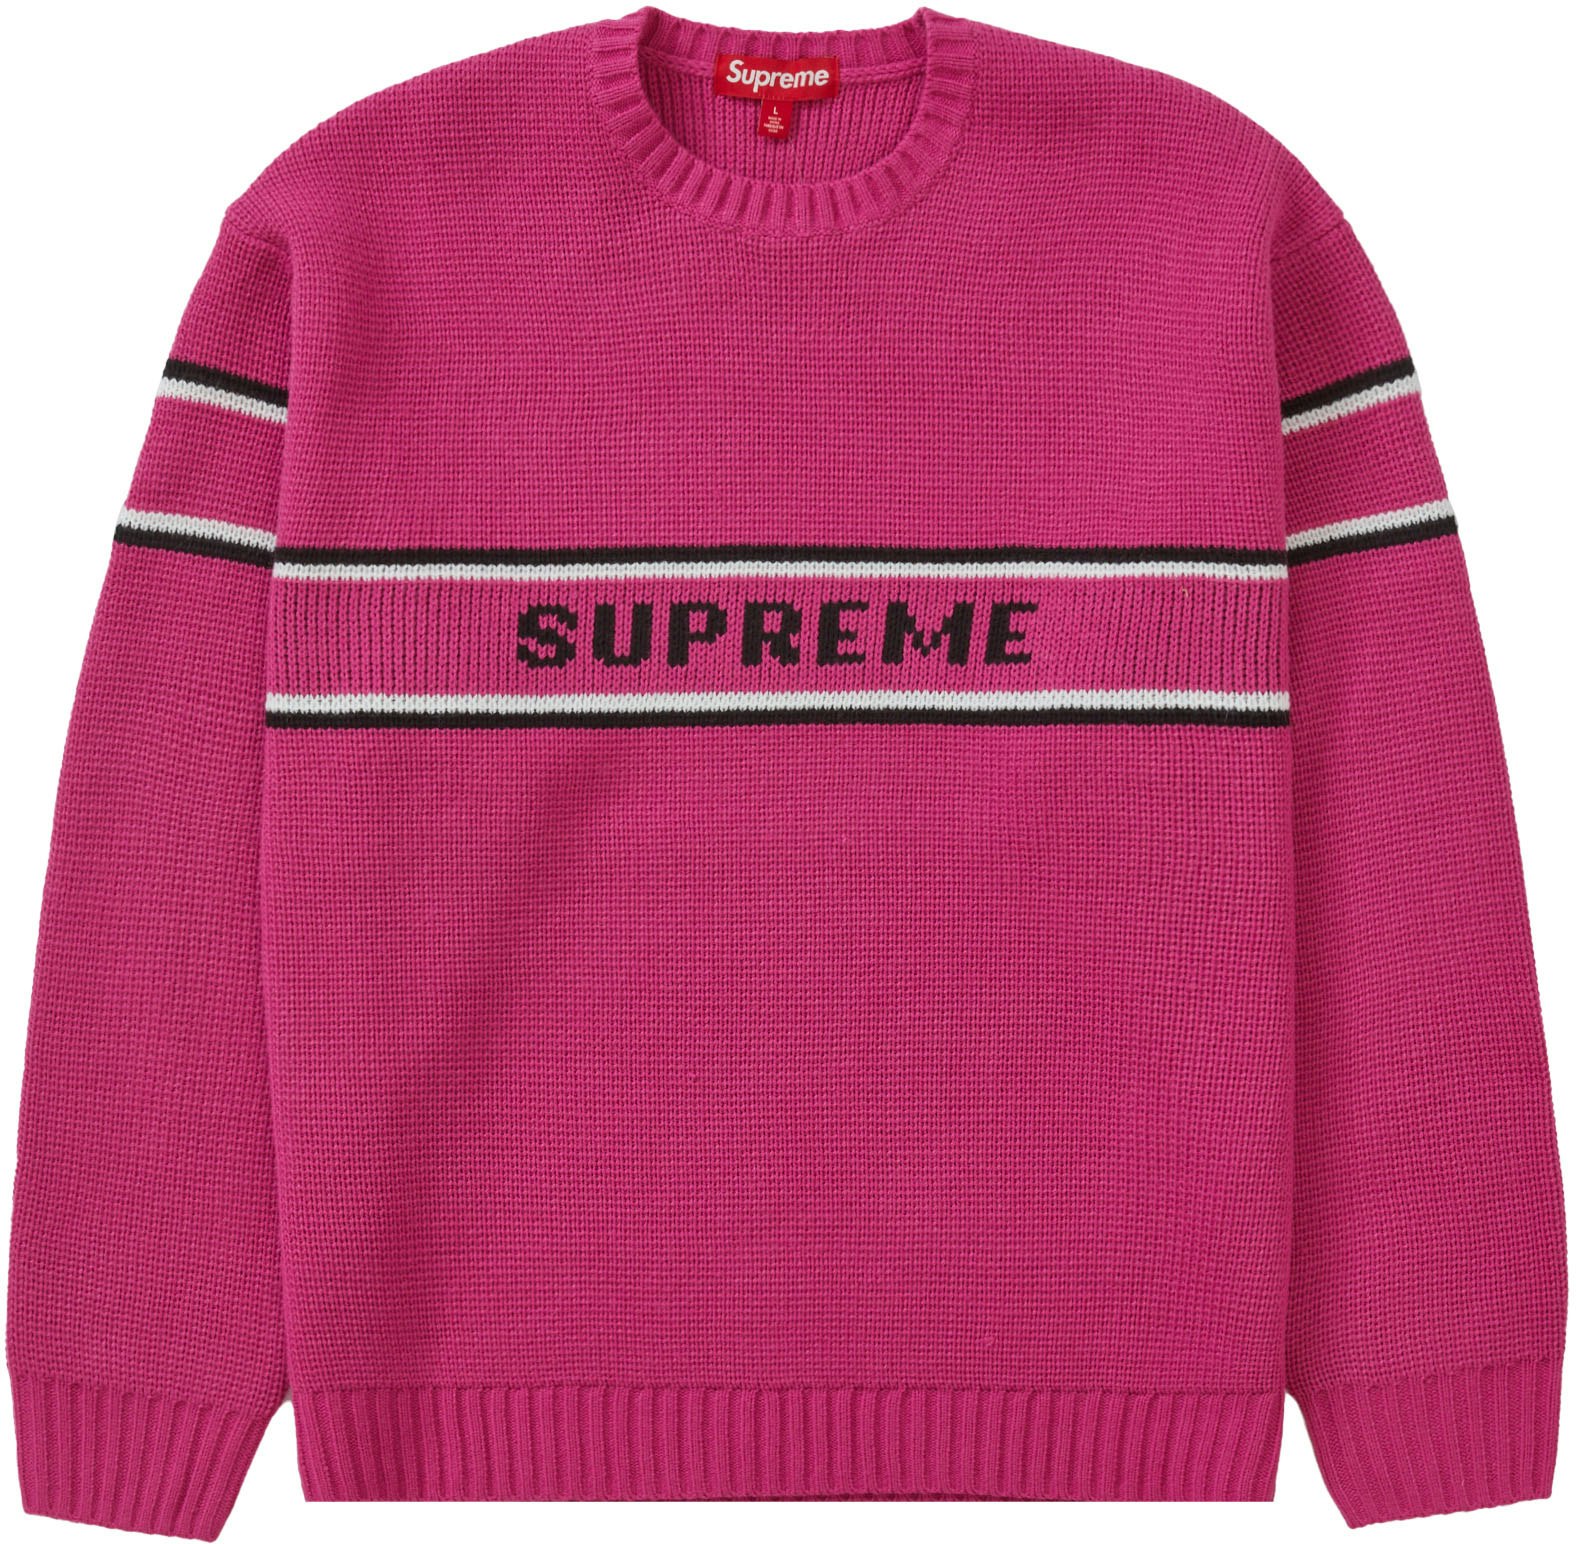 一回も着てない商品ですSupreme sweater pink s size 23fw 